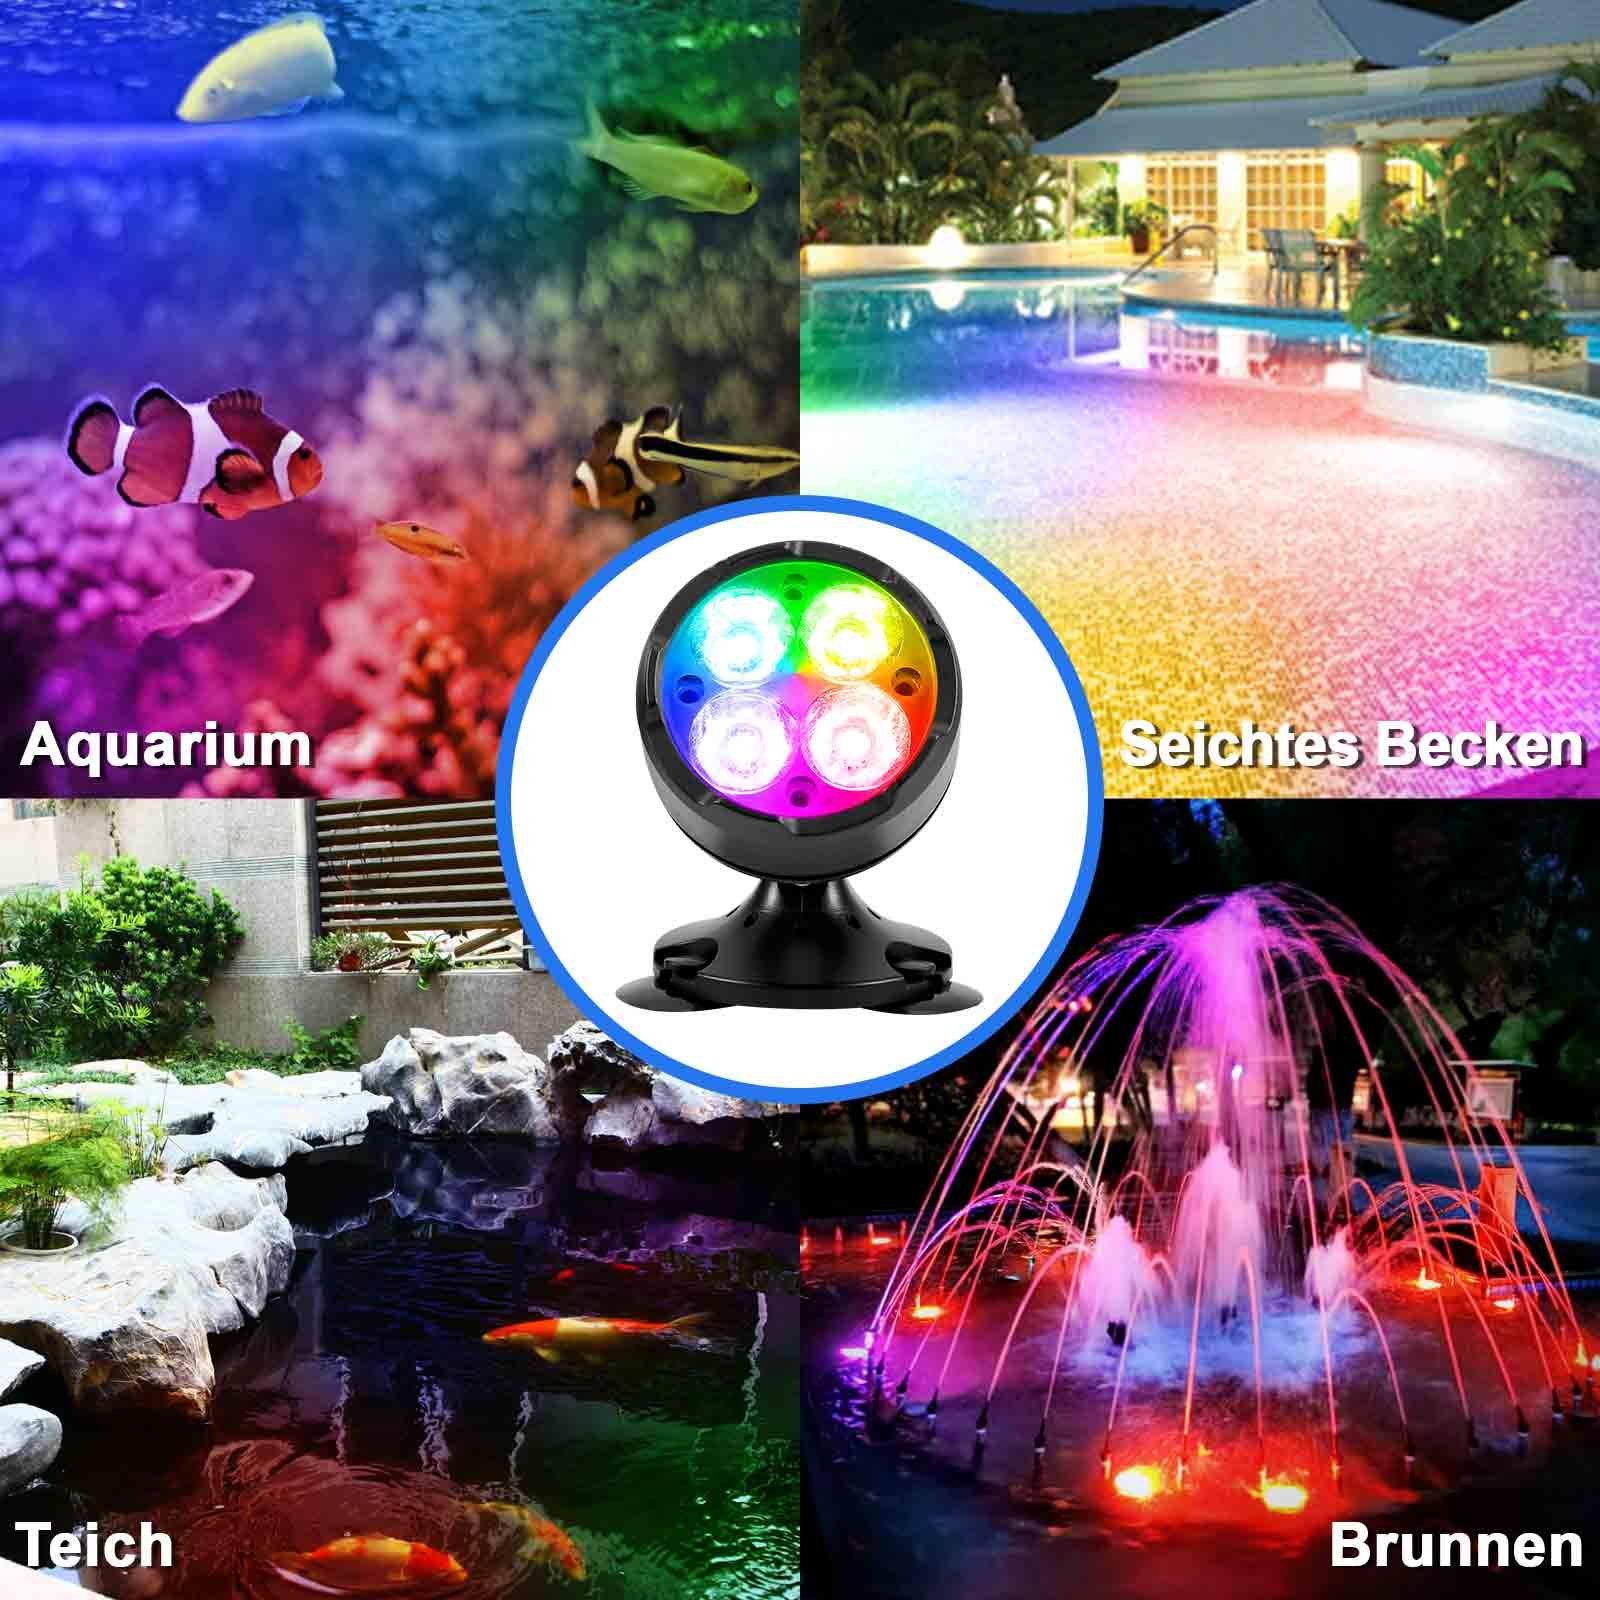 Sunicol dimmbar, einstellbar LEDs, Garten, RGB, Fernbedienung/App, für Gartenstrahler Teich Aquarium Wasserdicht, 180°